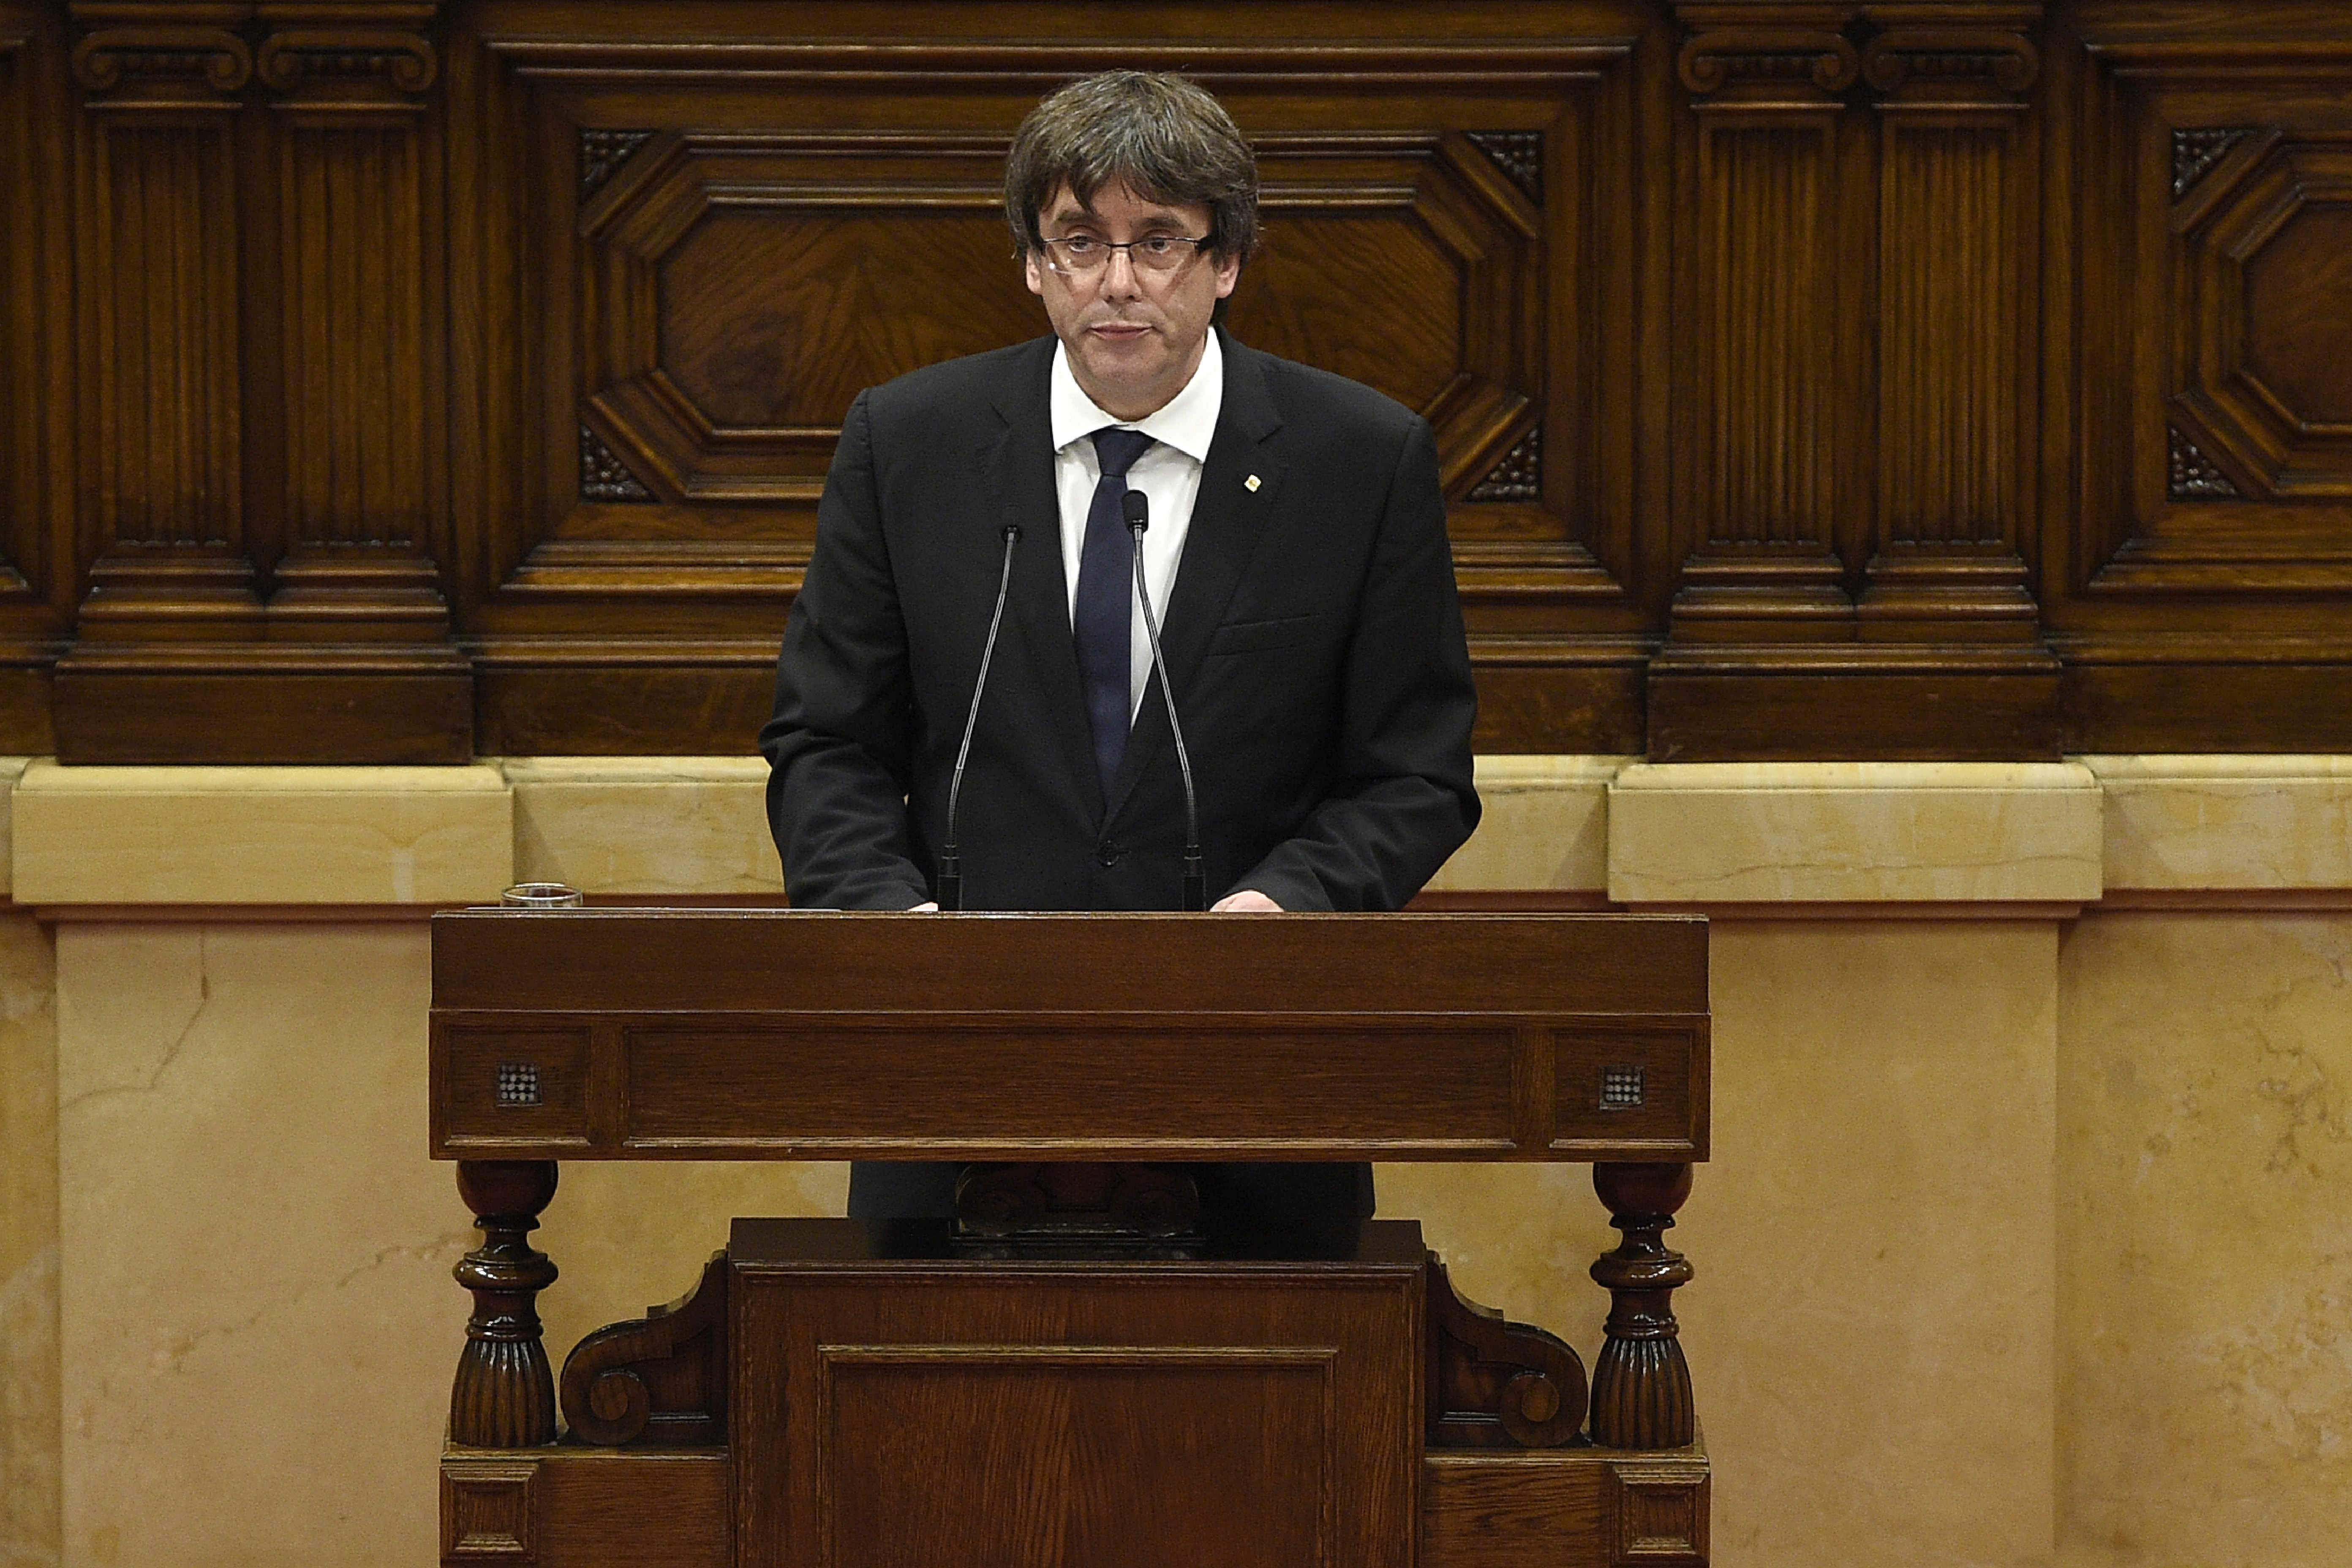 A katalán elnök az utolsó pillanatban félrerántotta a kormányt, és nem jelentette be a függetlenséget